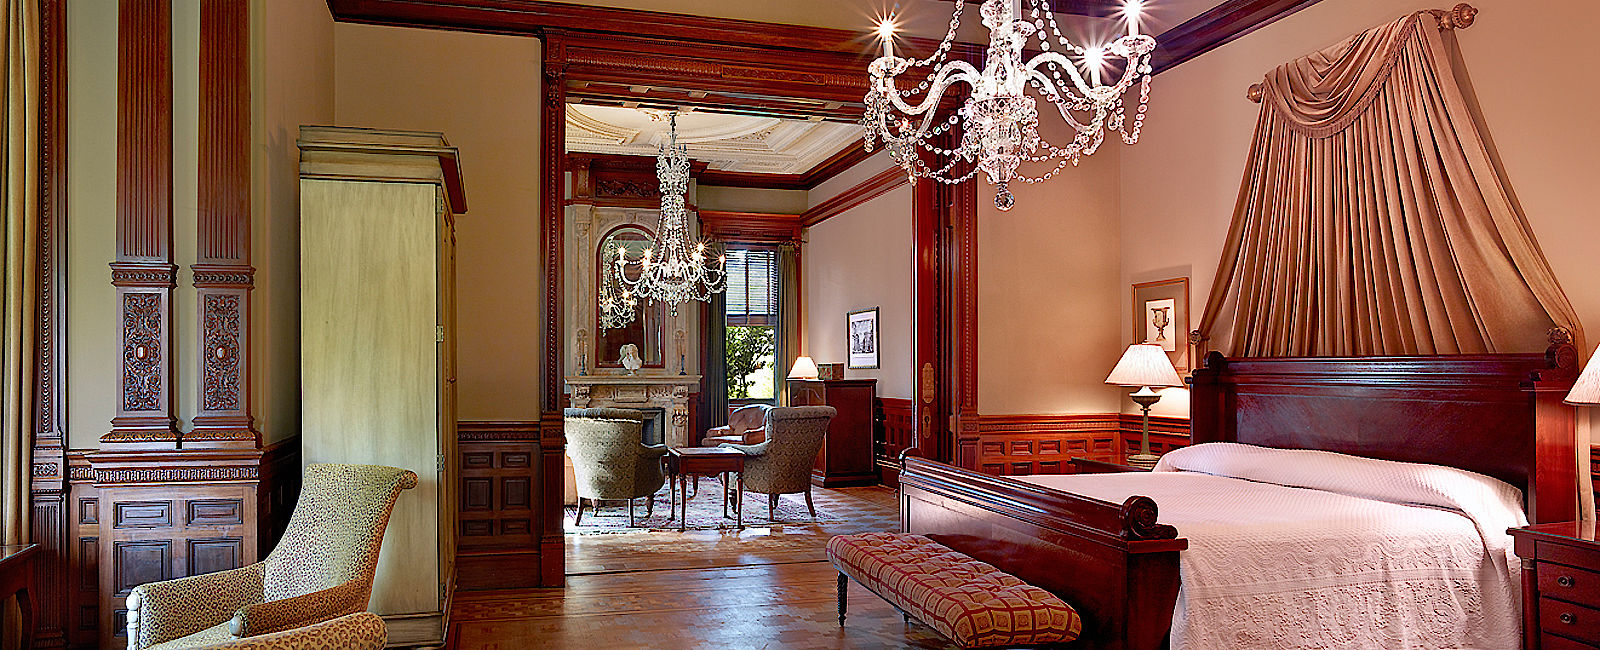 HOTEL TIPPS
 Wentworth Mansion 
 Private Luxus Residenz für anspruchsvolle Gäste 